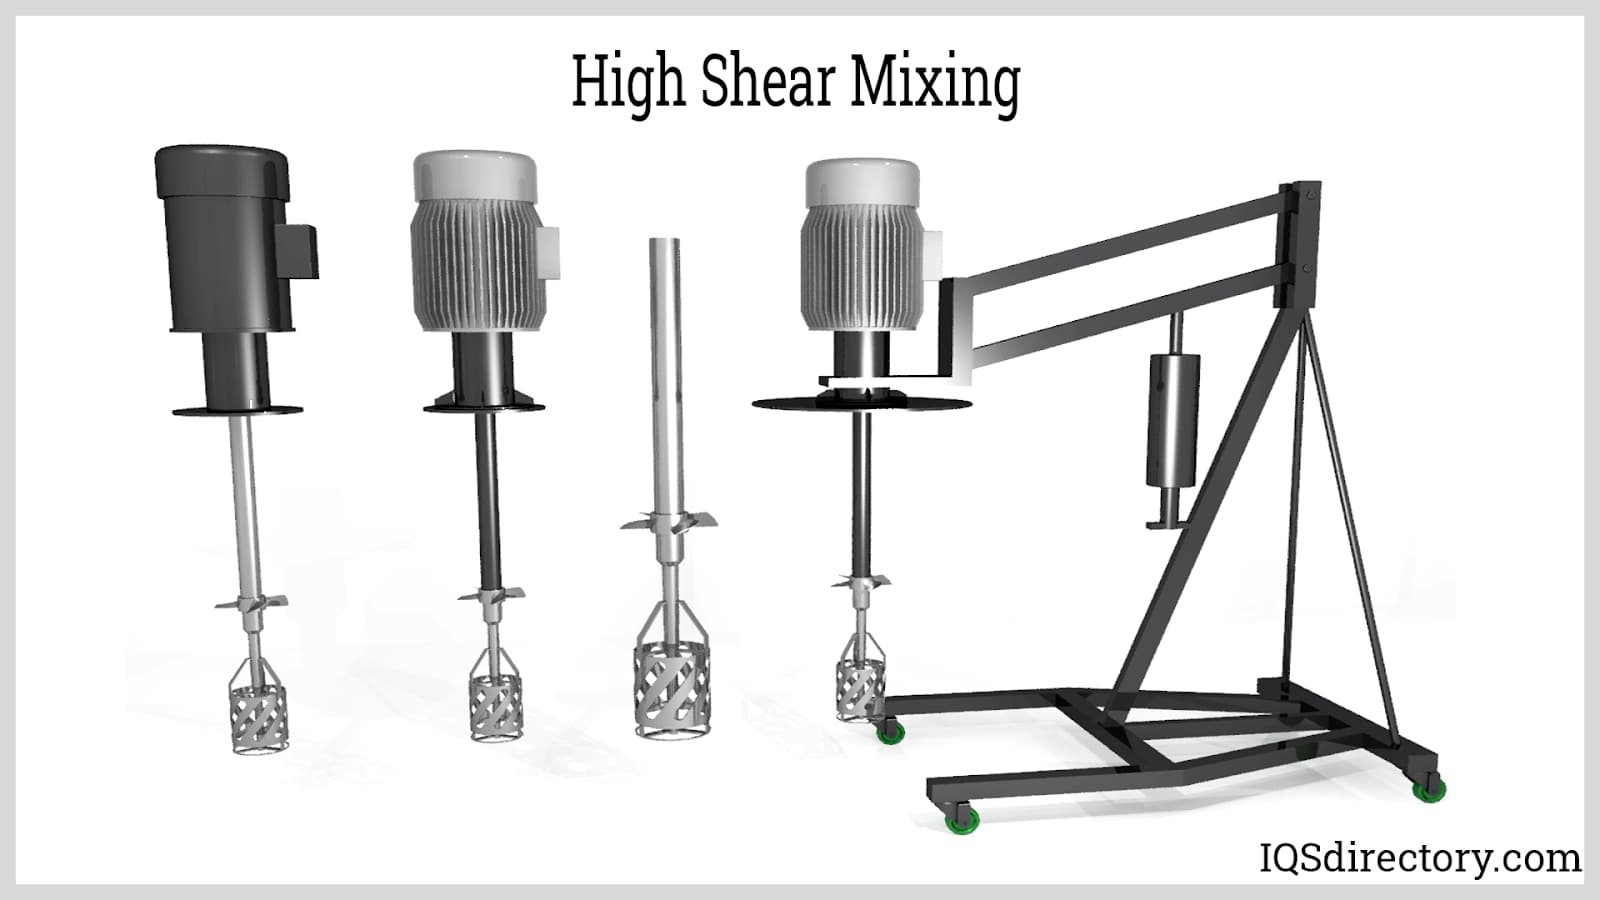 High Shear Mixing